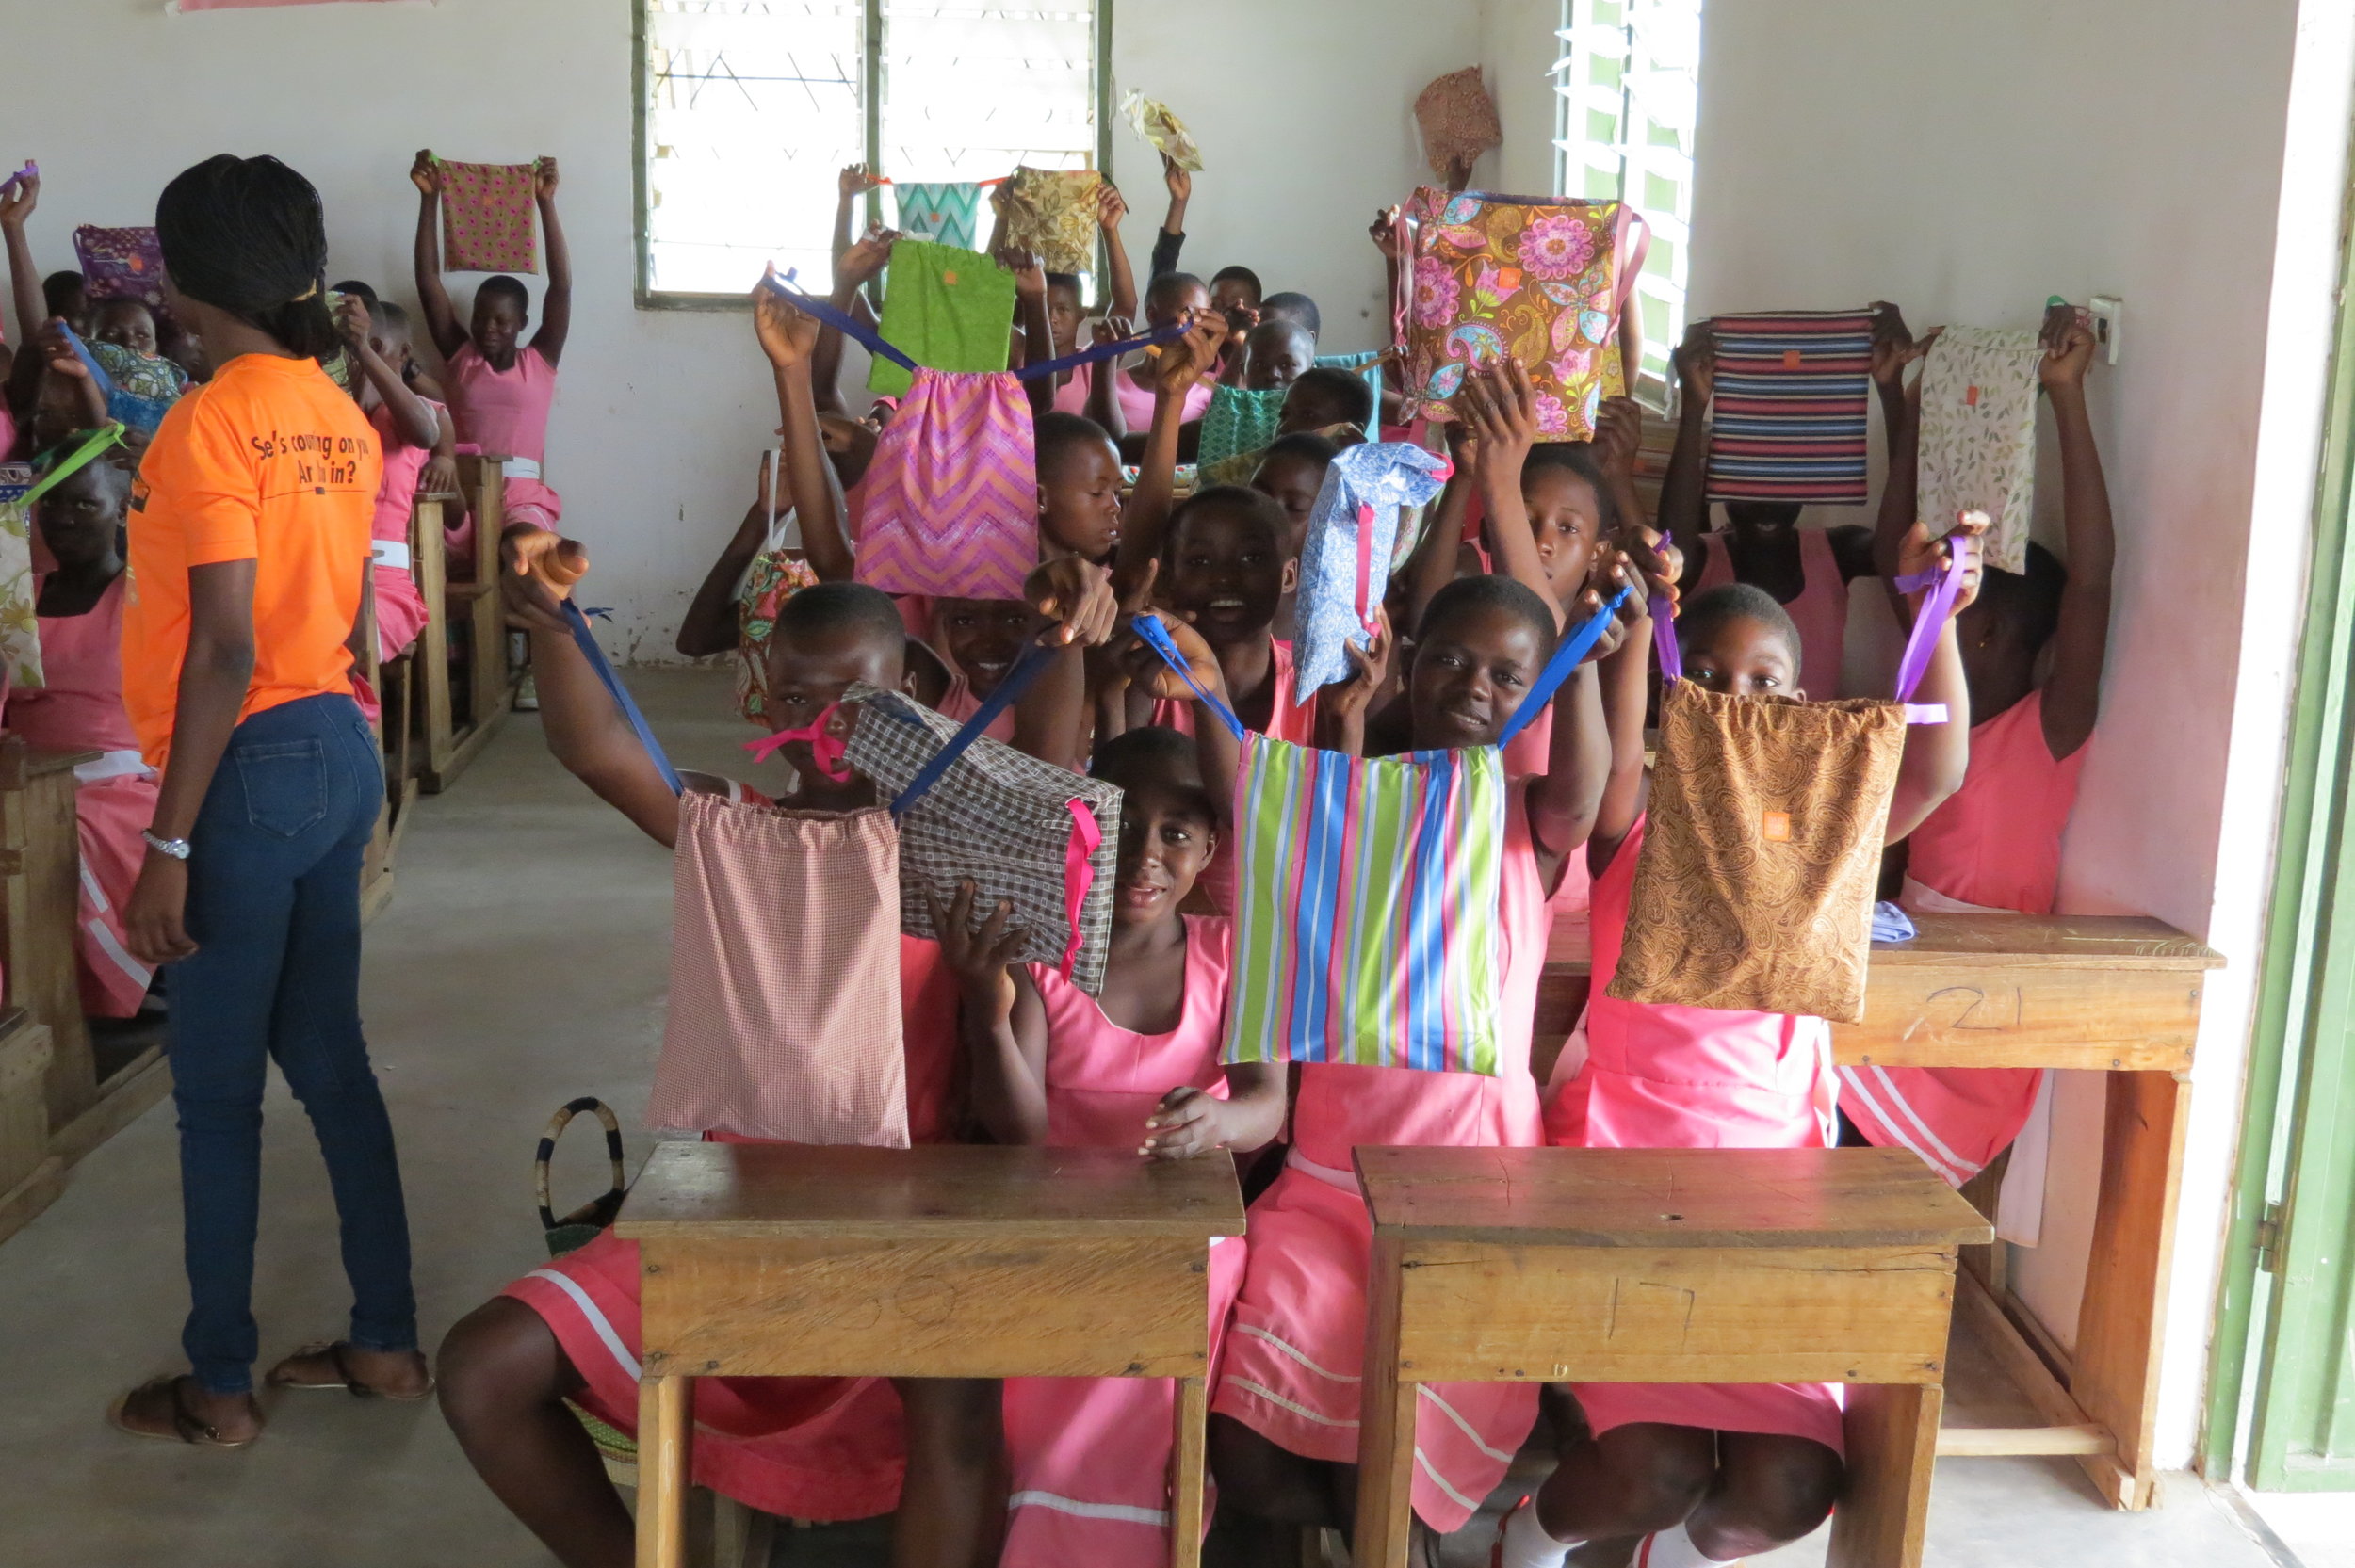 $500 - Provides feminine hygiene kits for one school